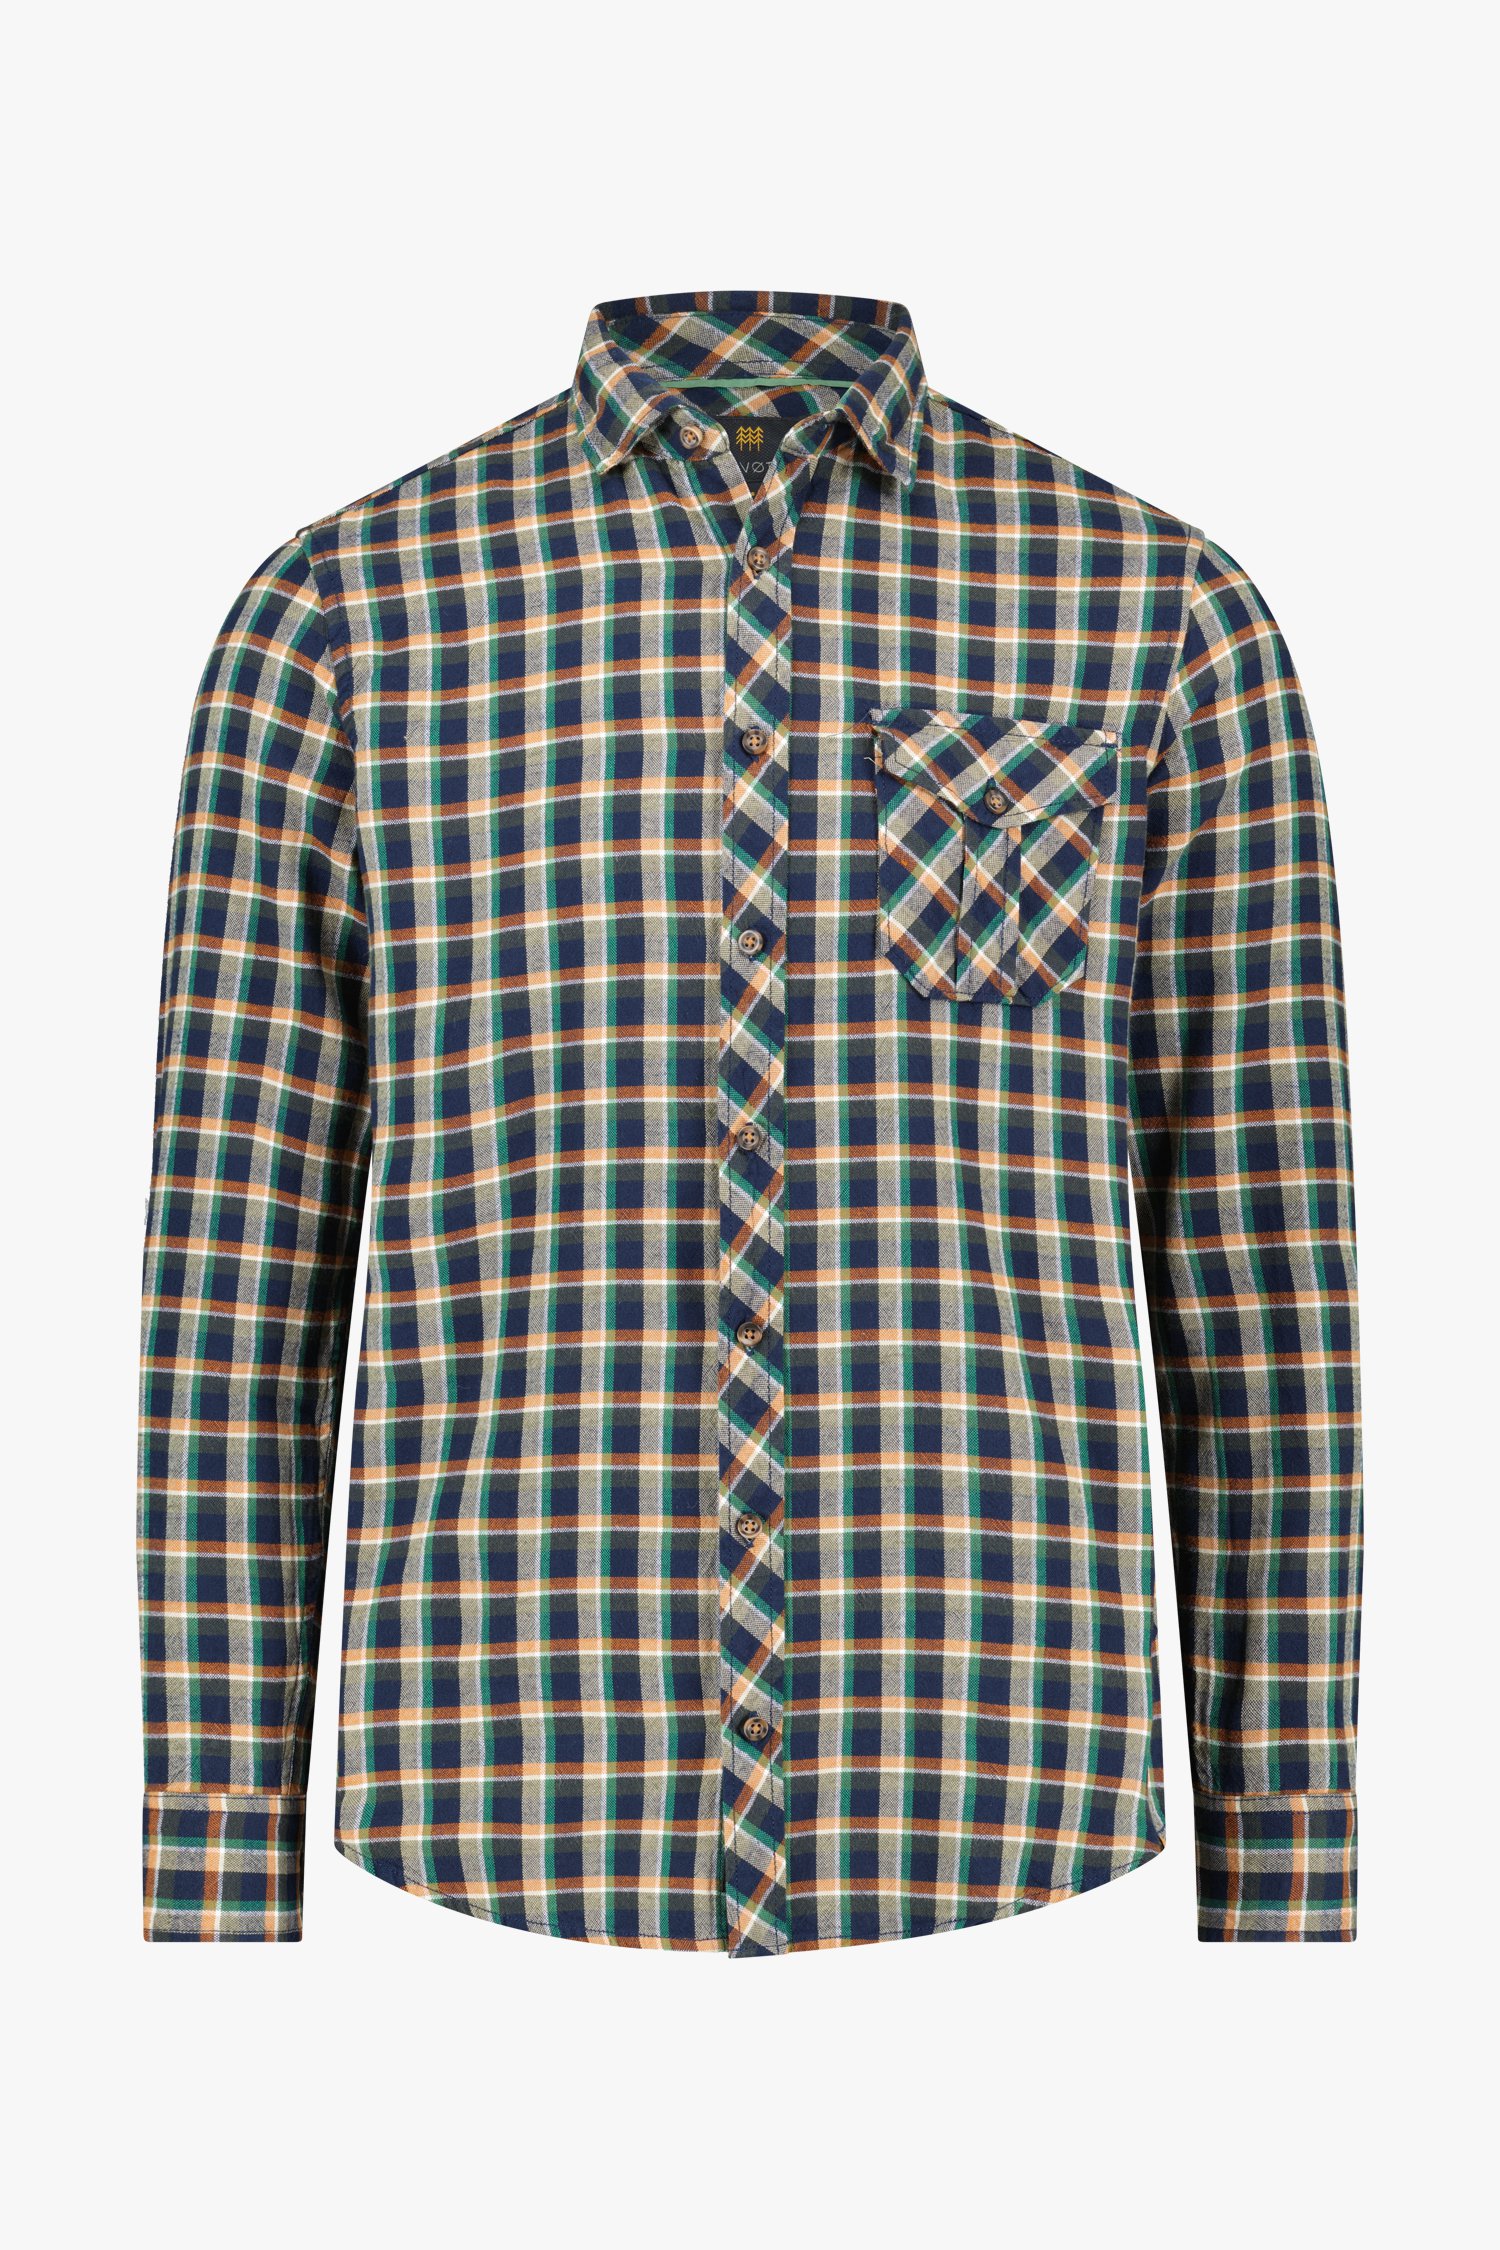 Blauw-groen geruit hemd - regular fit van Ravøtt voor Heren